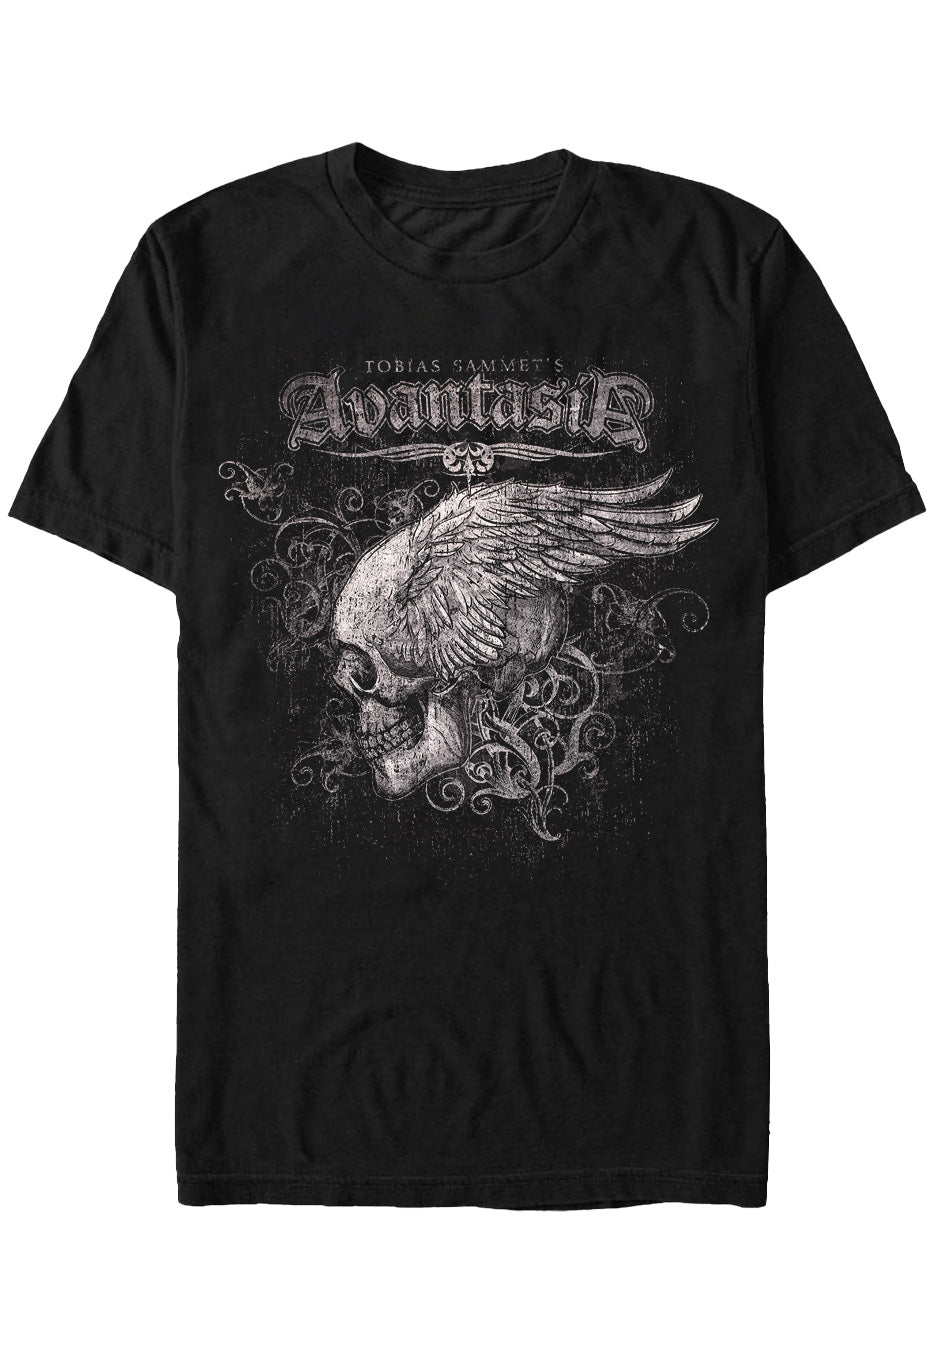 Avantasia - Skullwing Tour 2016 - T-Shirt